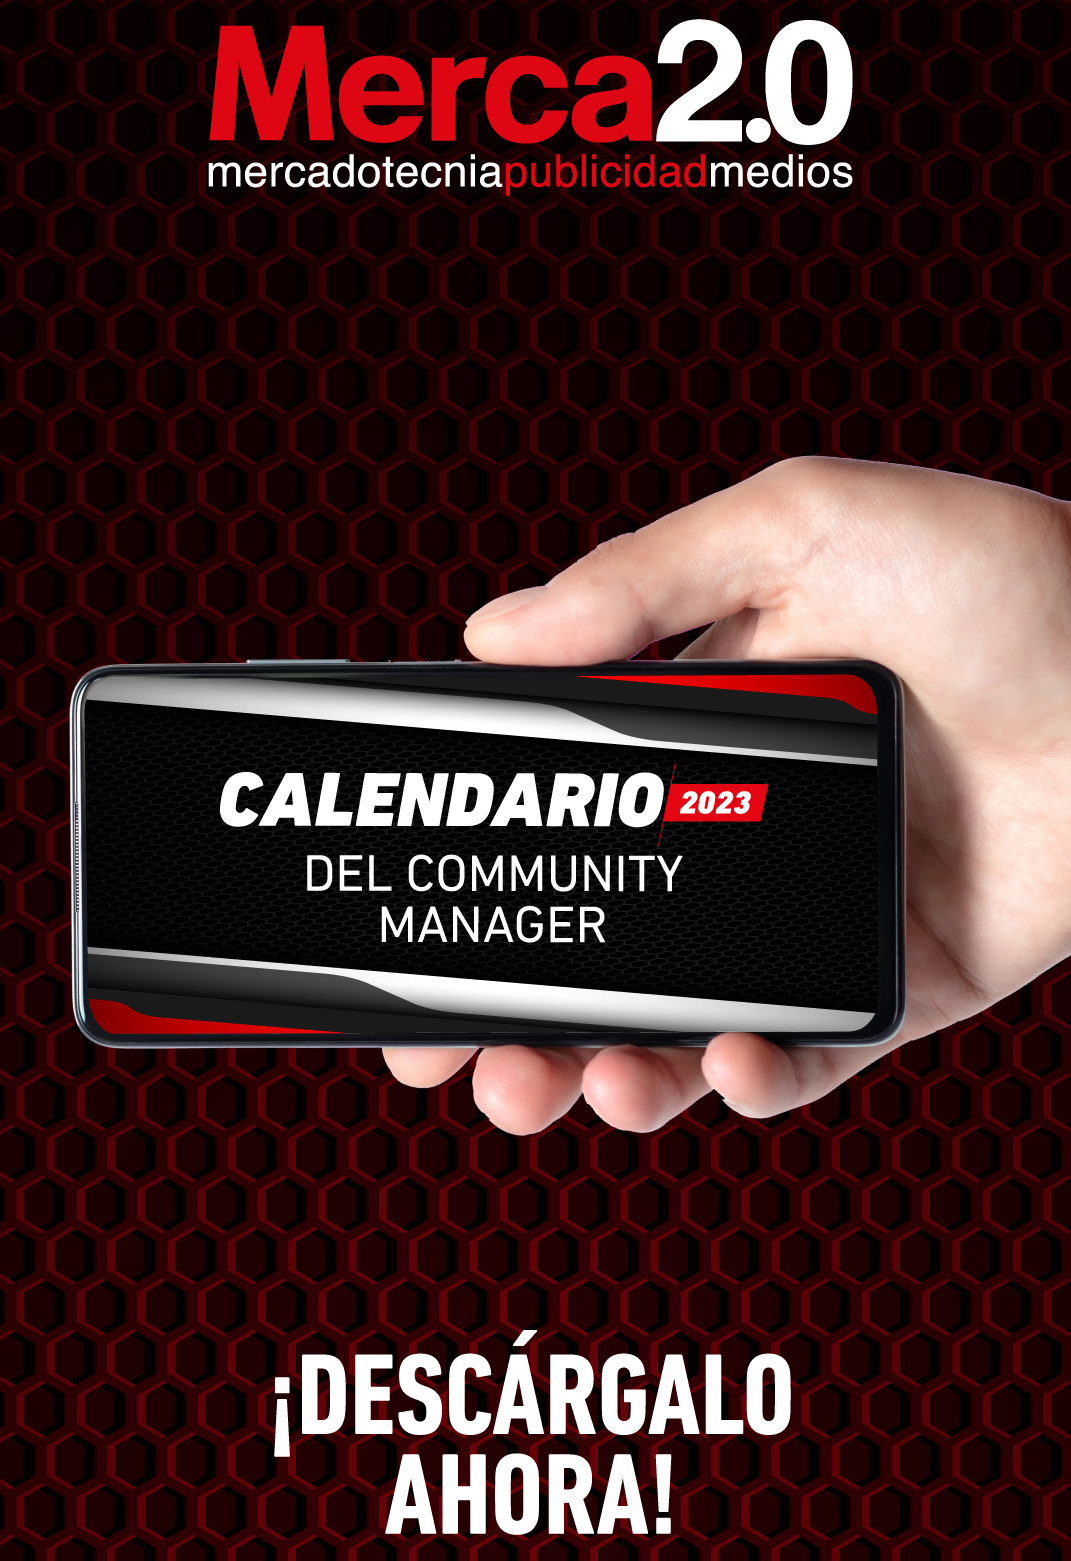 Este es el calendario del Community Manager para 2023